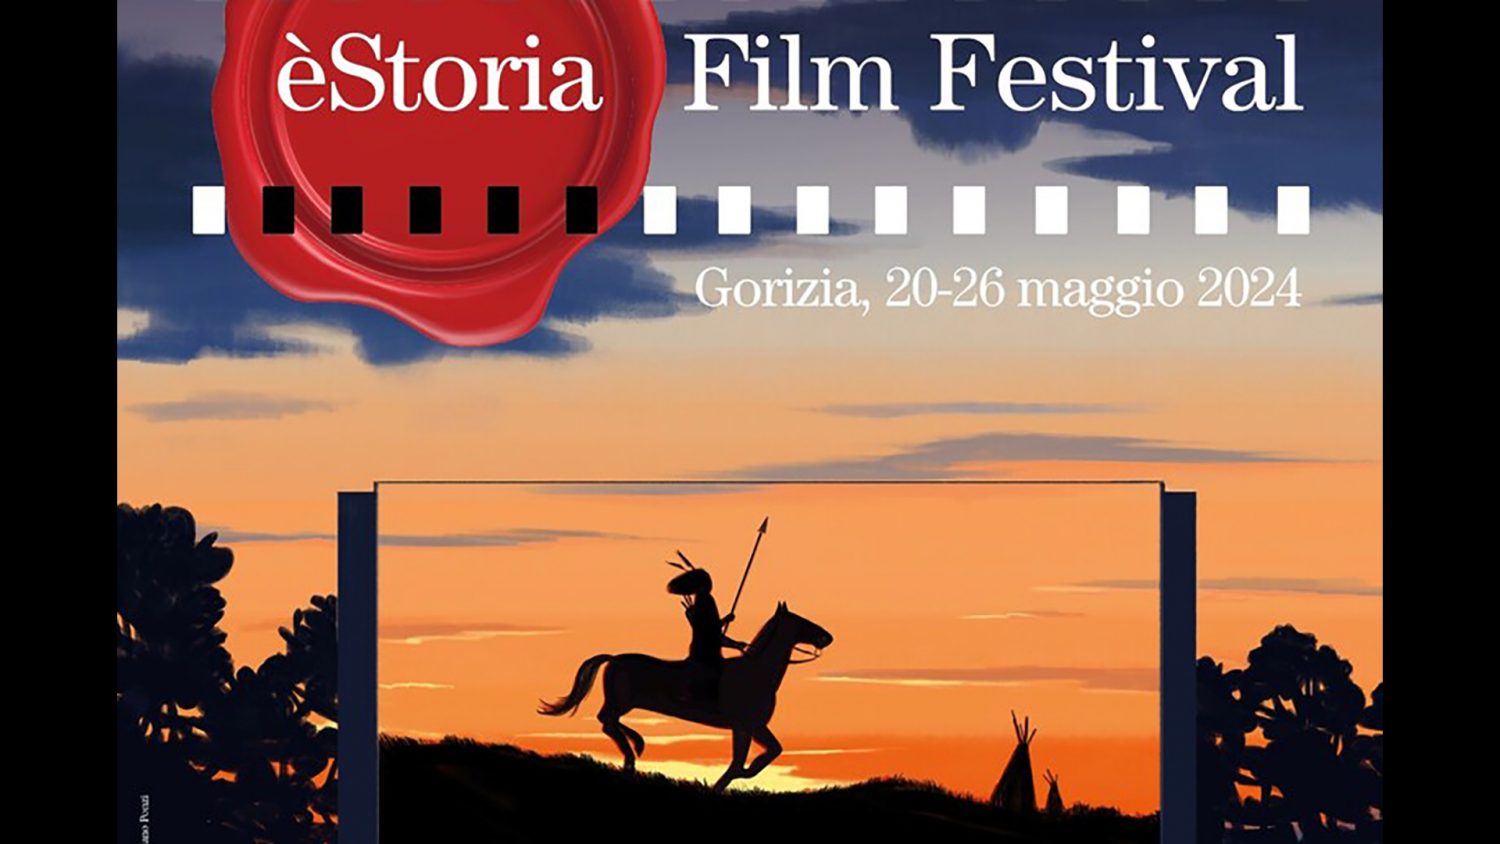 ‘èStoria Film Festival’, al via a Gorizia la rassegna dei film storici